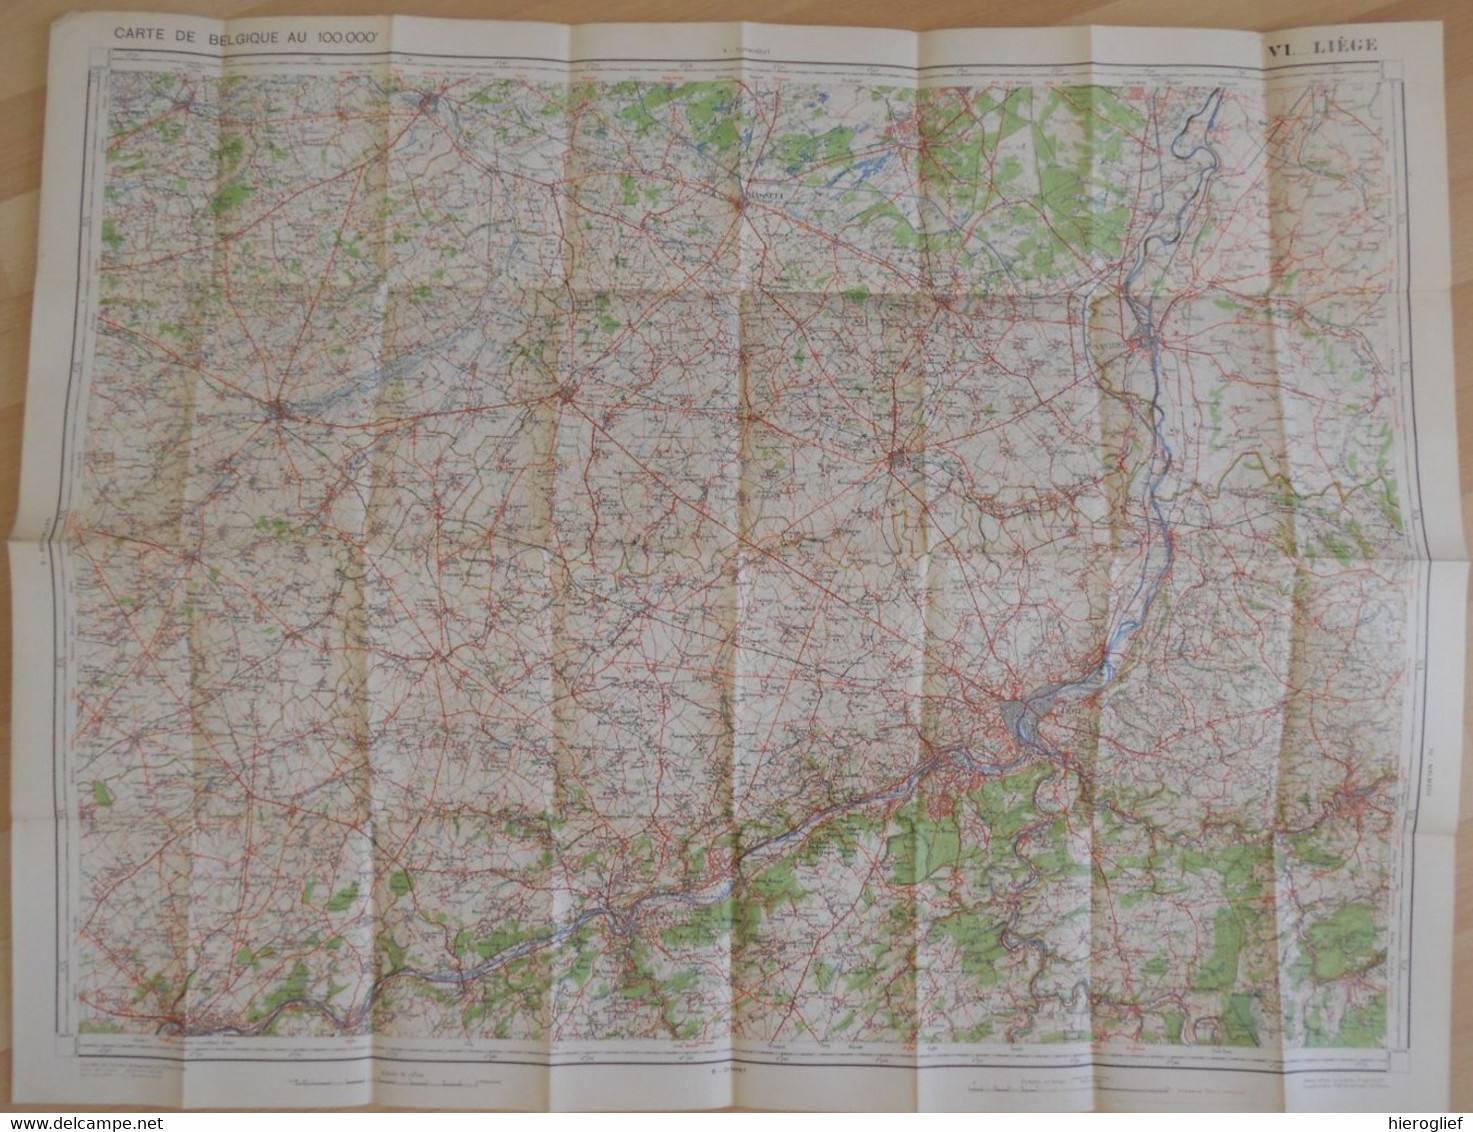 Carte De BELGIQUE Nr 6 LIEGE Institut Cartographique Militaire Impression Litho 1933 Maastricht Hasselt Tongeren Tienen - Carte Topografiche